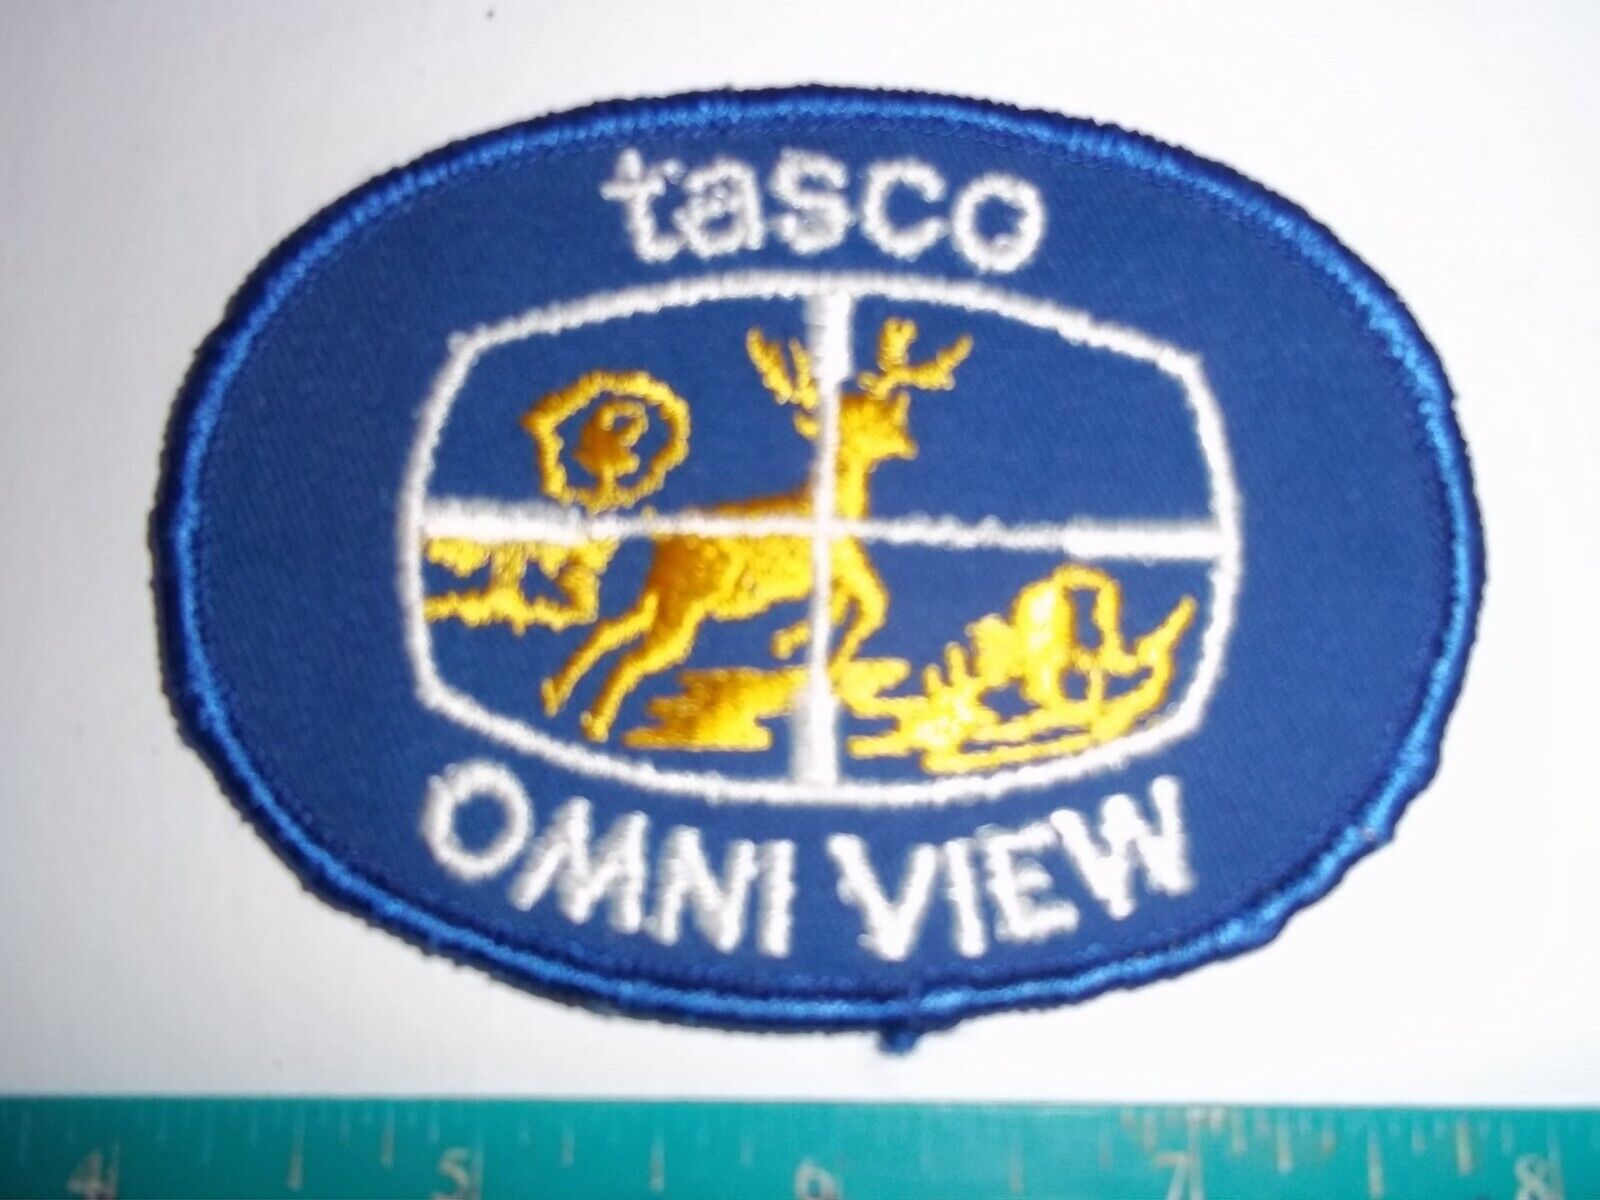 TASCO OMNI VIEW PATCH rifle scopes firearms gun shooting hunting deer moose elk